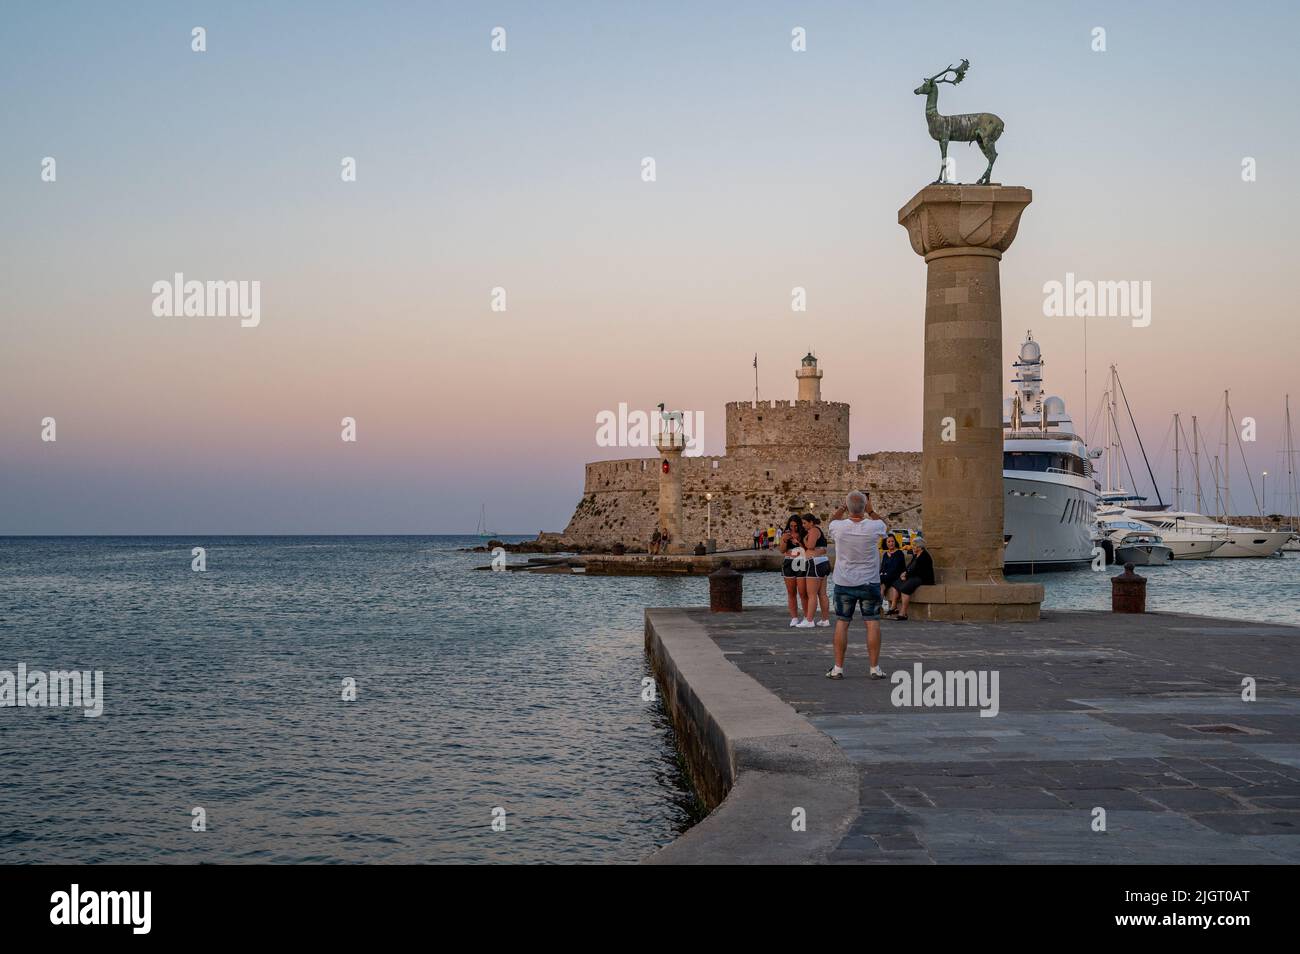 Port de Mandraki à Rhodes, sur l'île de Rhodes, en Grèce. Banque D'Images